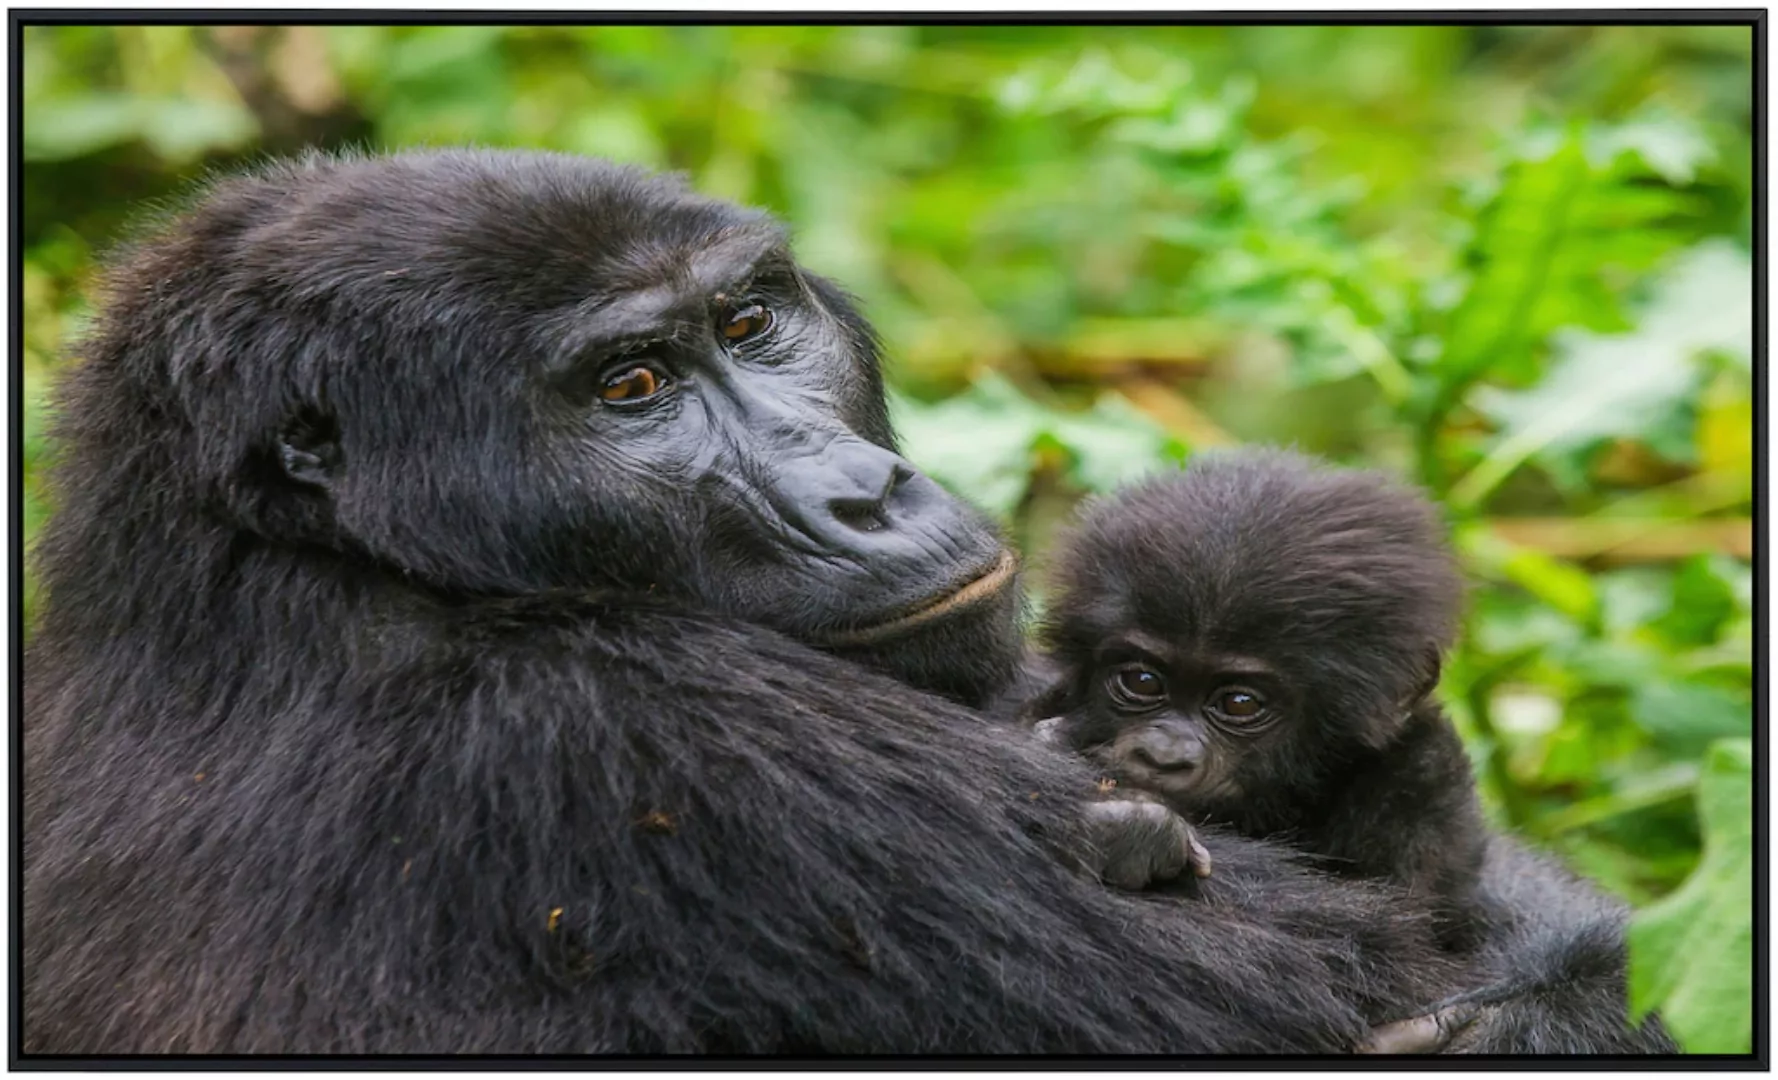 Papermoon Infrarotheizung »Gorilla mit Baby«, sehr angenehme Strahlungswärm günstig online kaufen